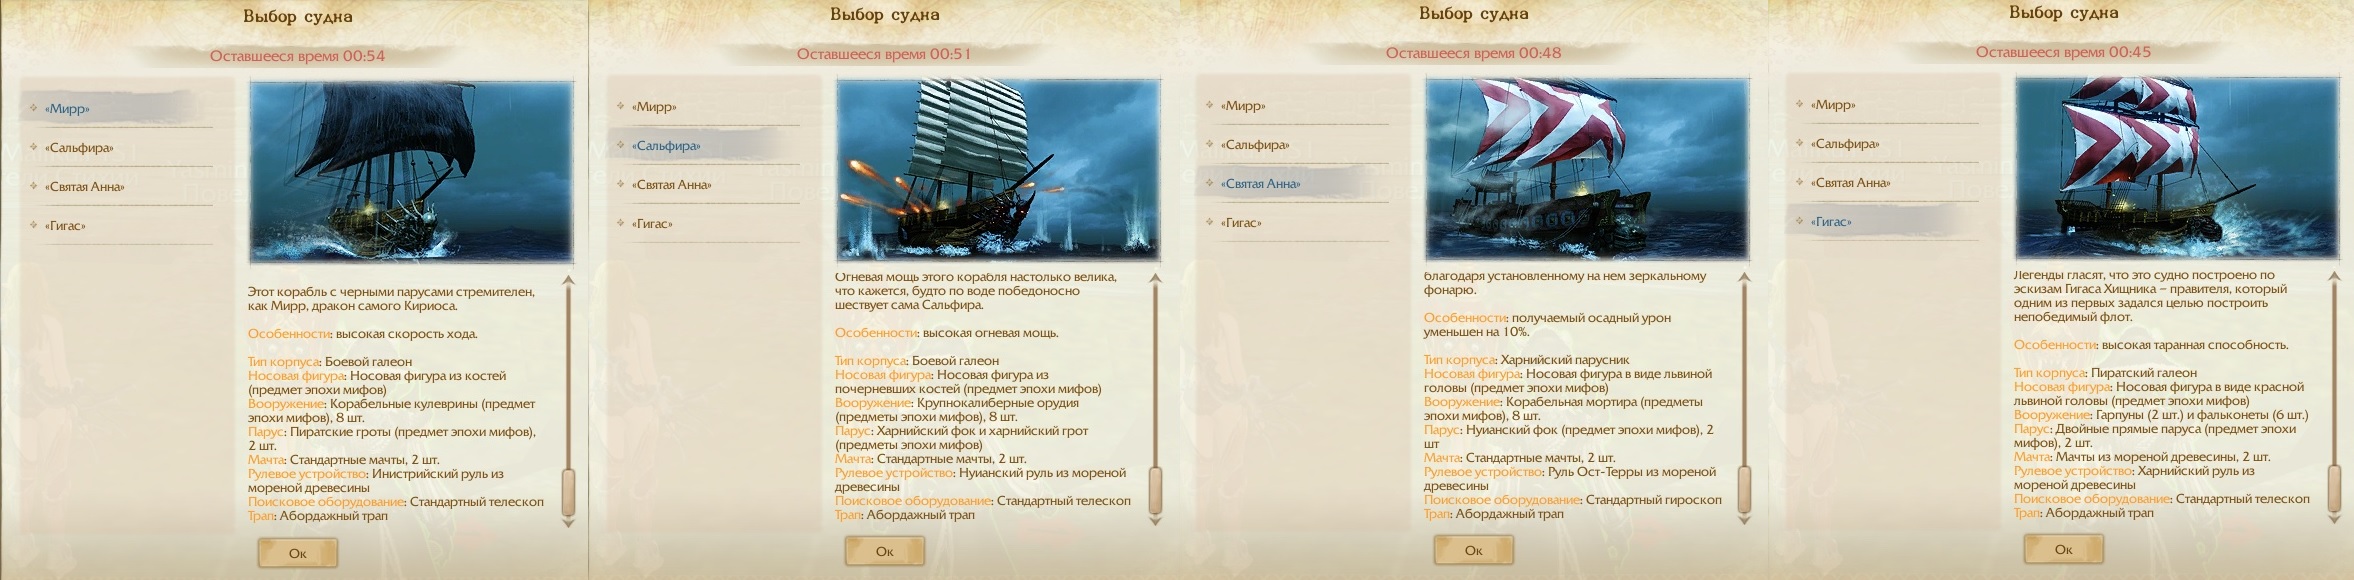 ArcheAge 4.0 — новая морская арена для 20 игроков